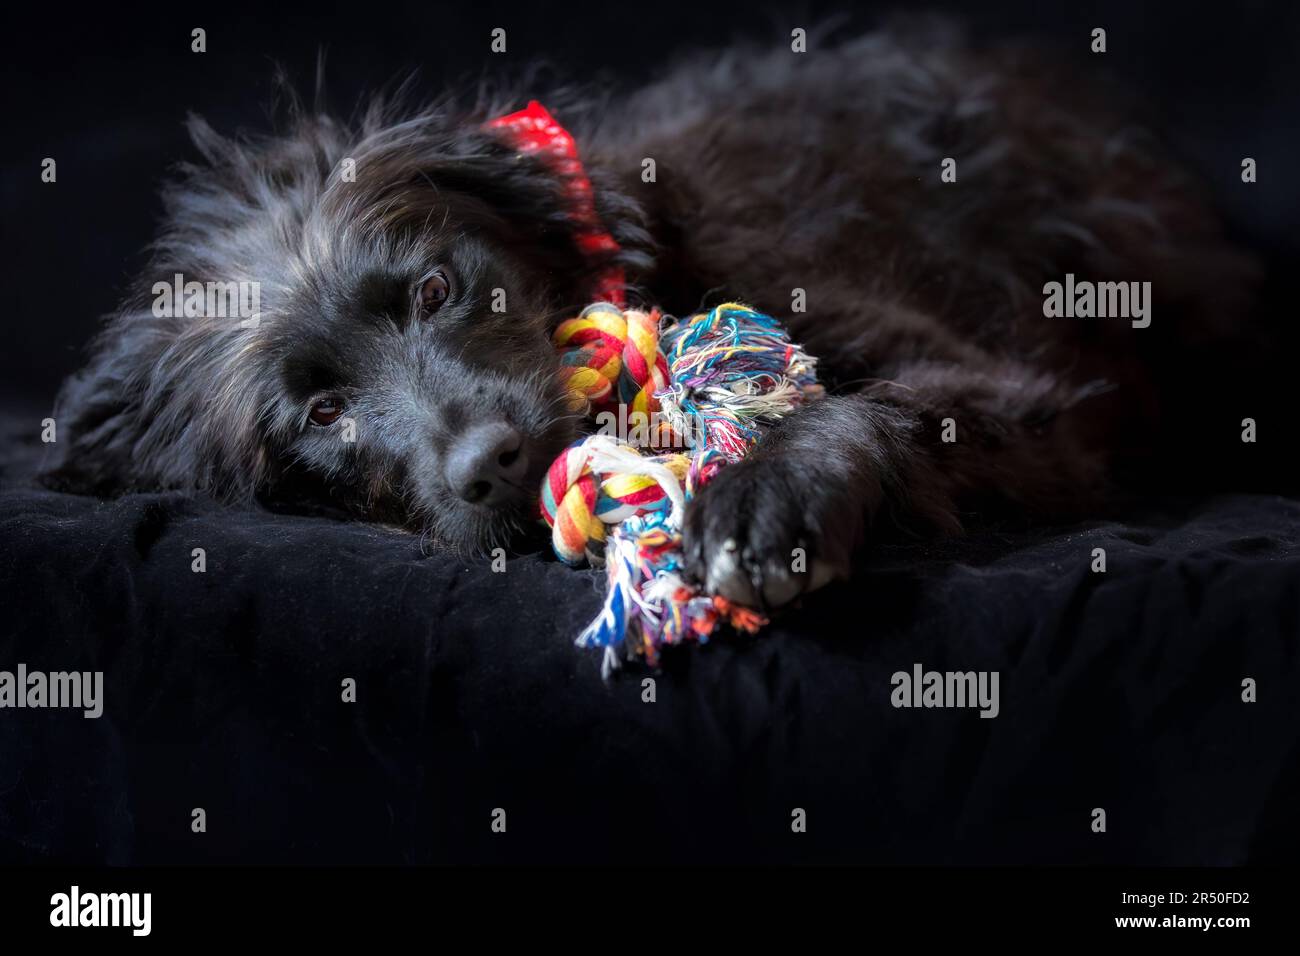 Soft cuddly dog toys Banque d'images détourées - Alamy